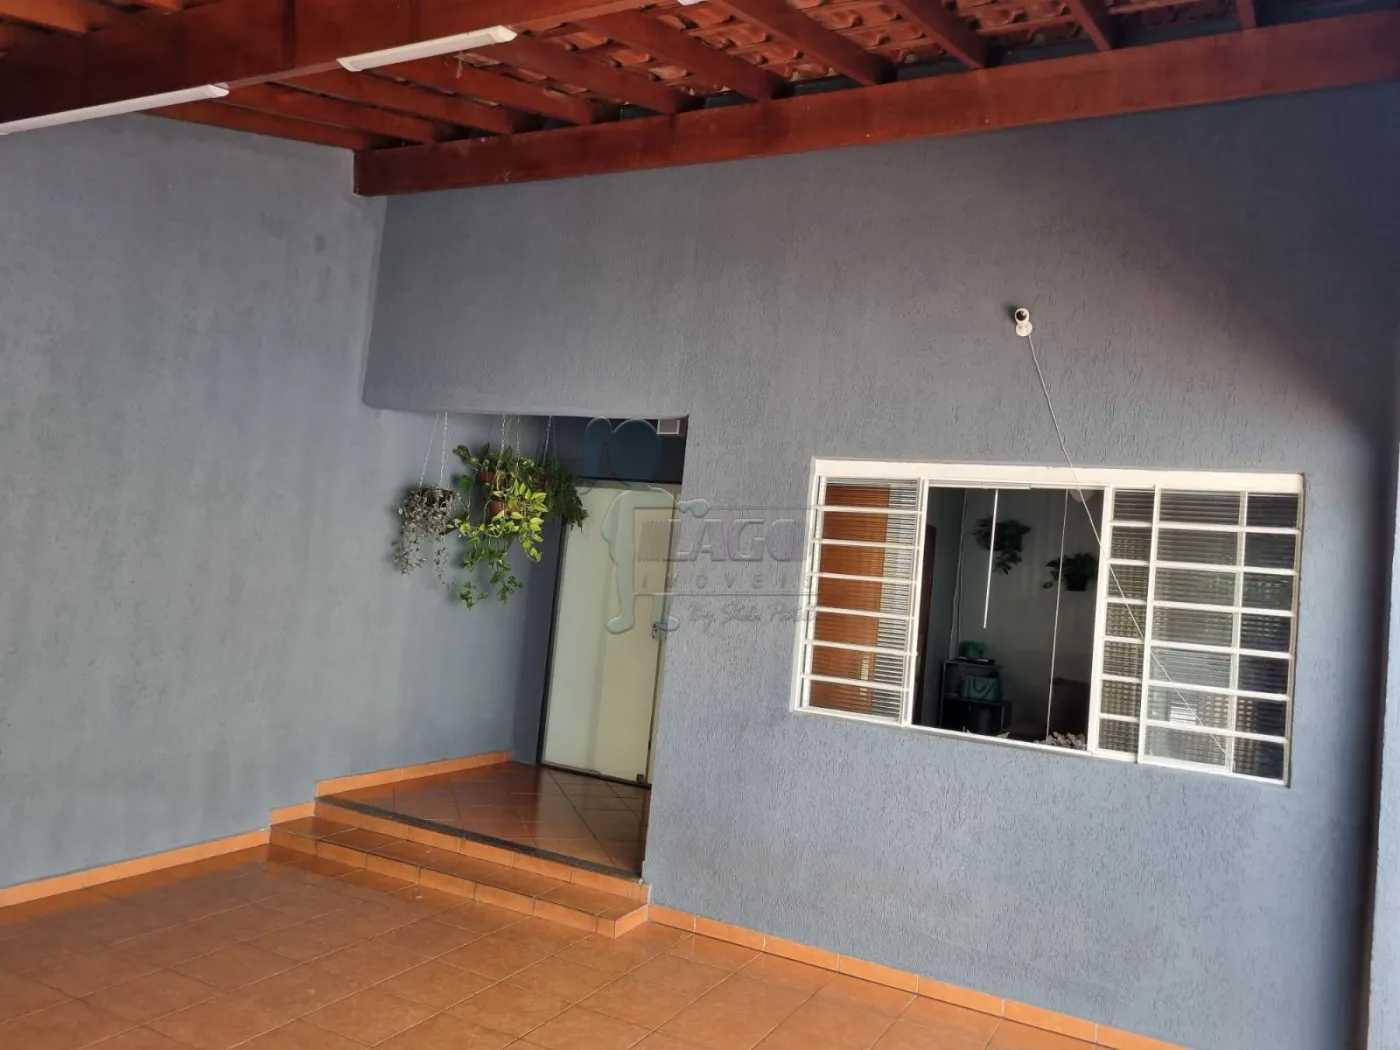 Comprar Casa / Padrão em Ribeirão Preto R$ 265.000,00 - Foto 3